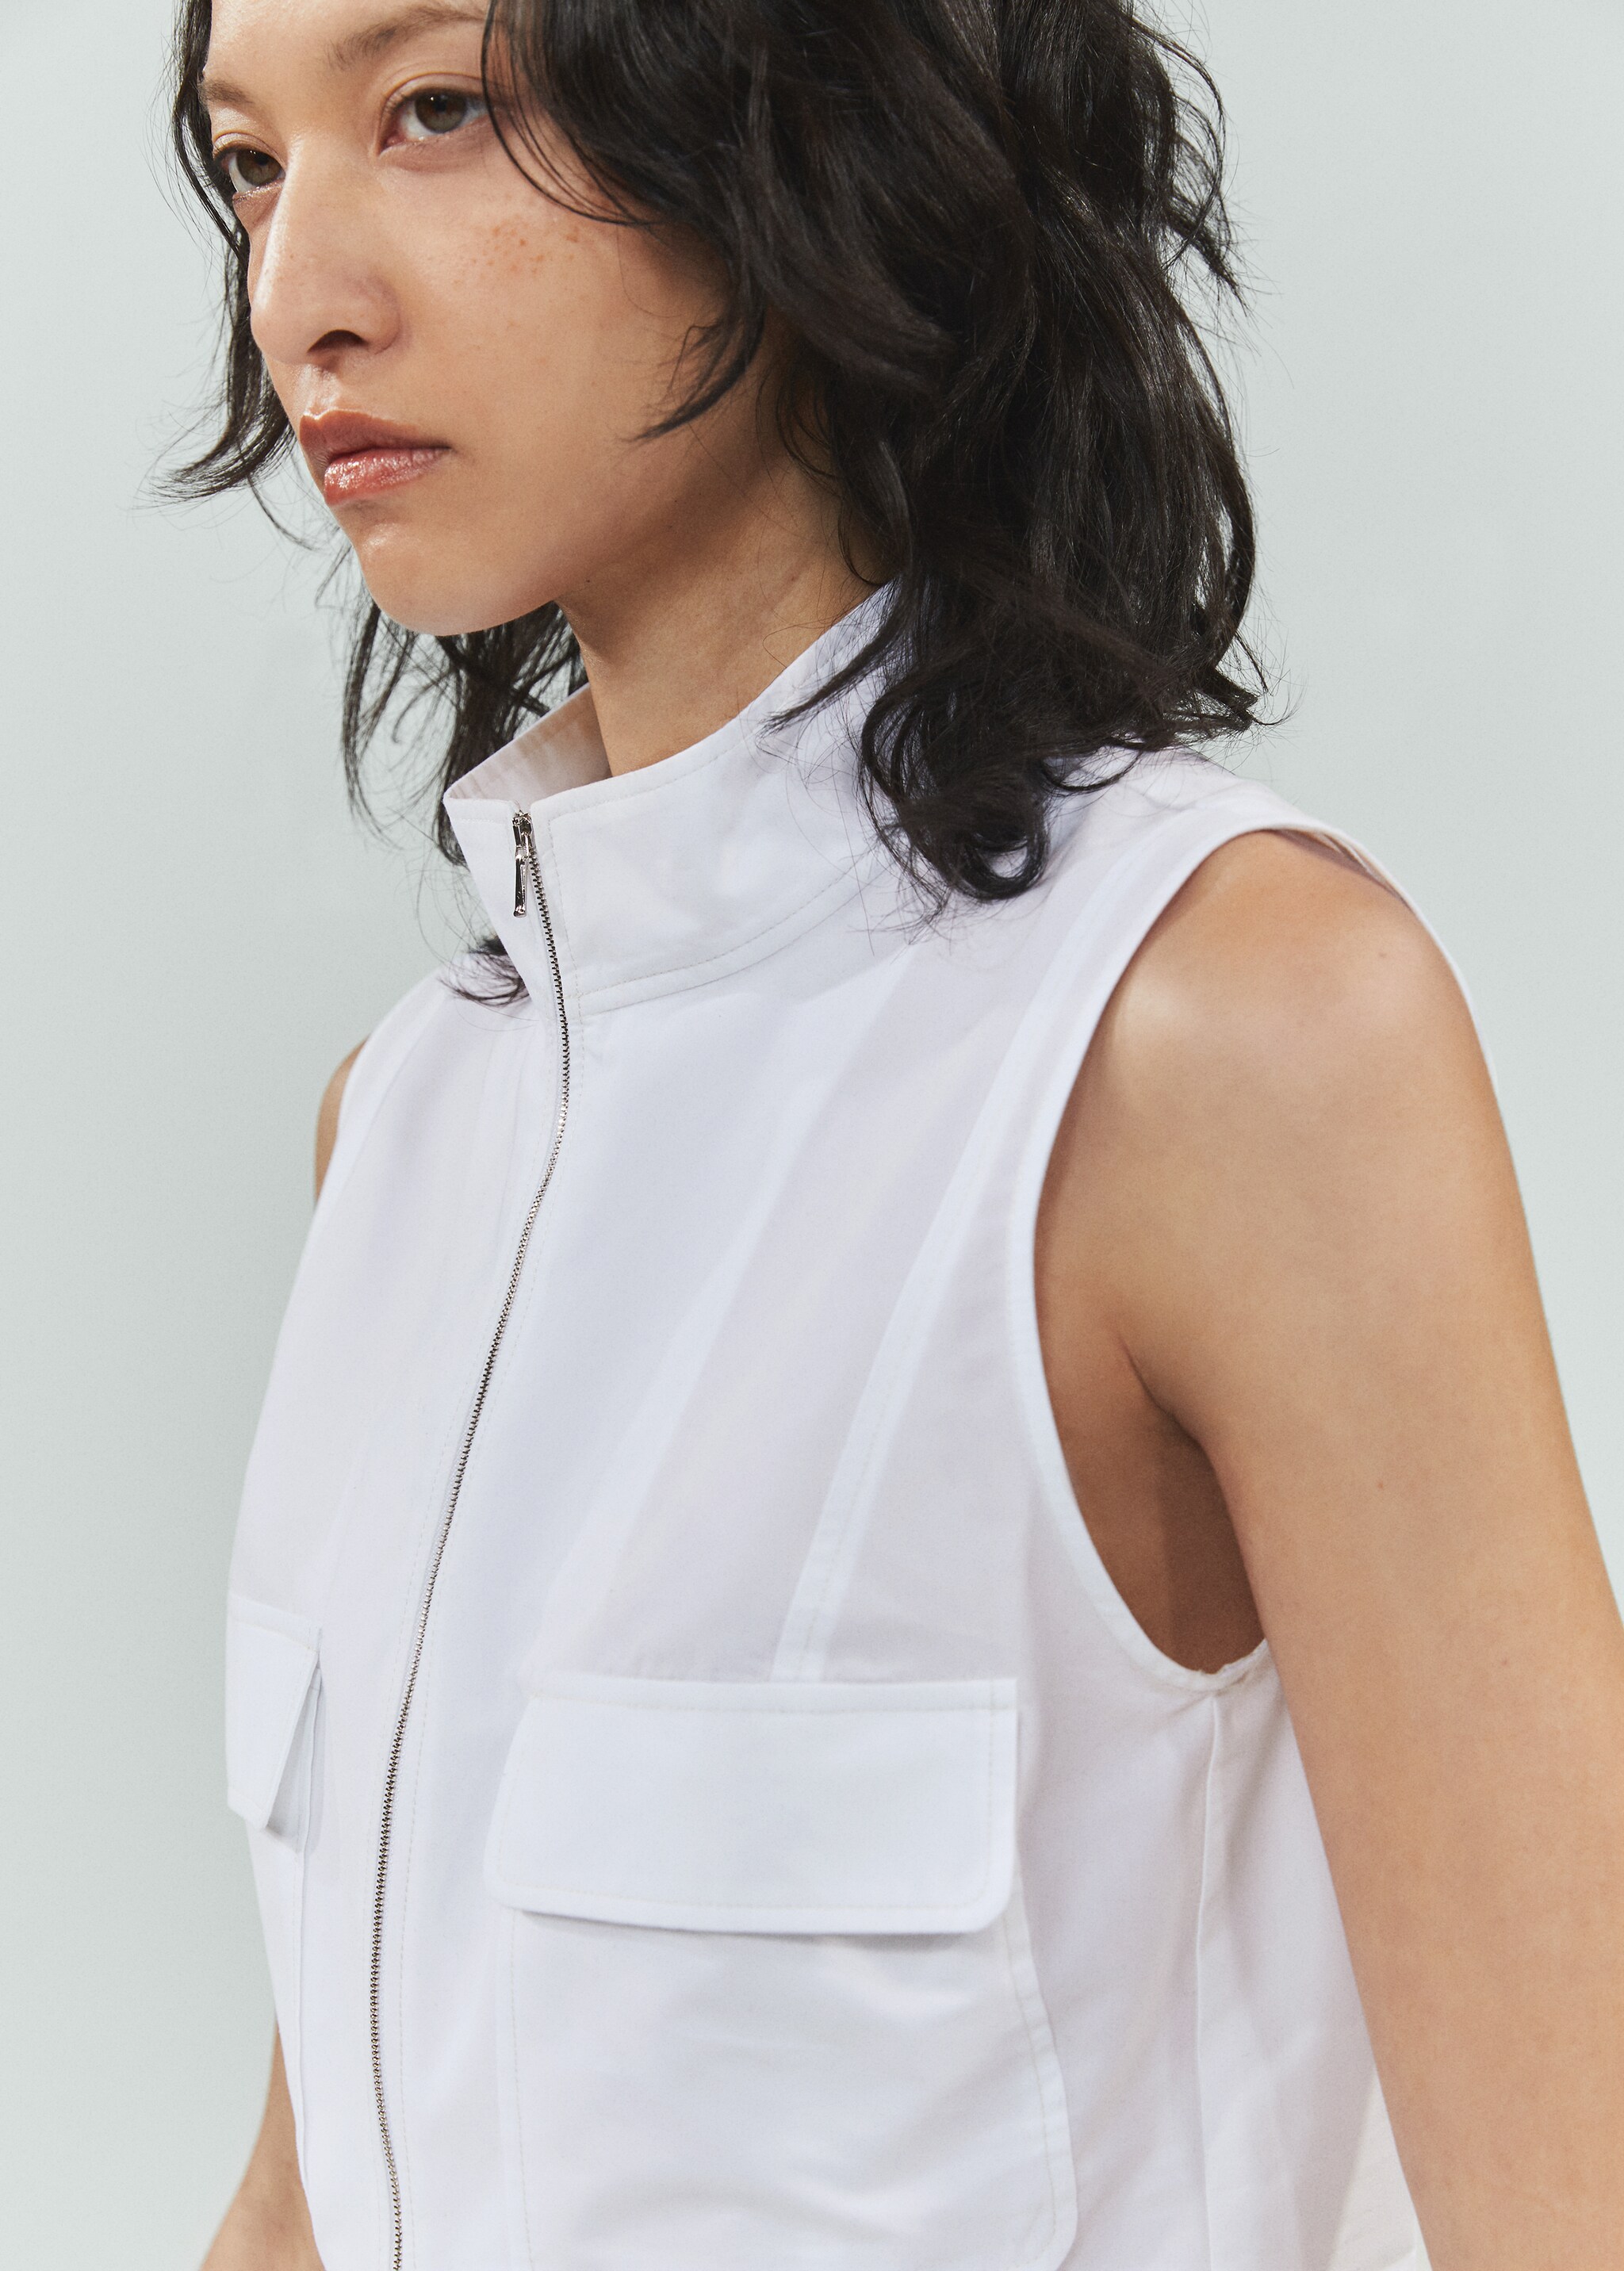 Cotton zipper sleeveless shirt - Details of the article 1